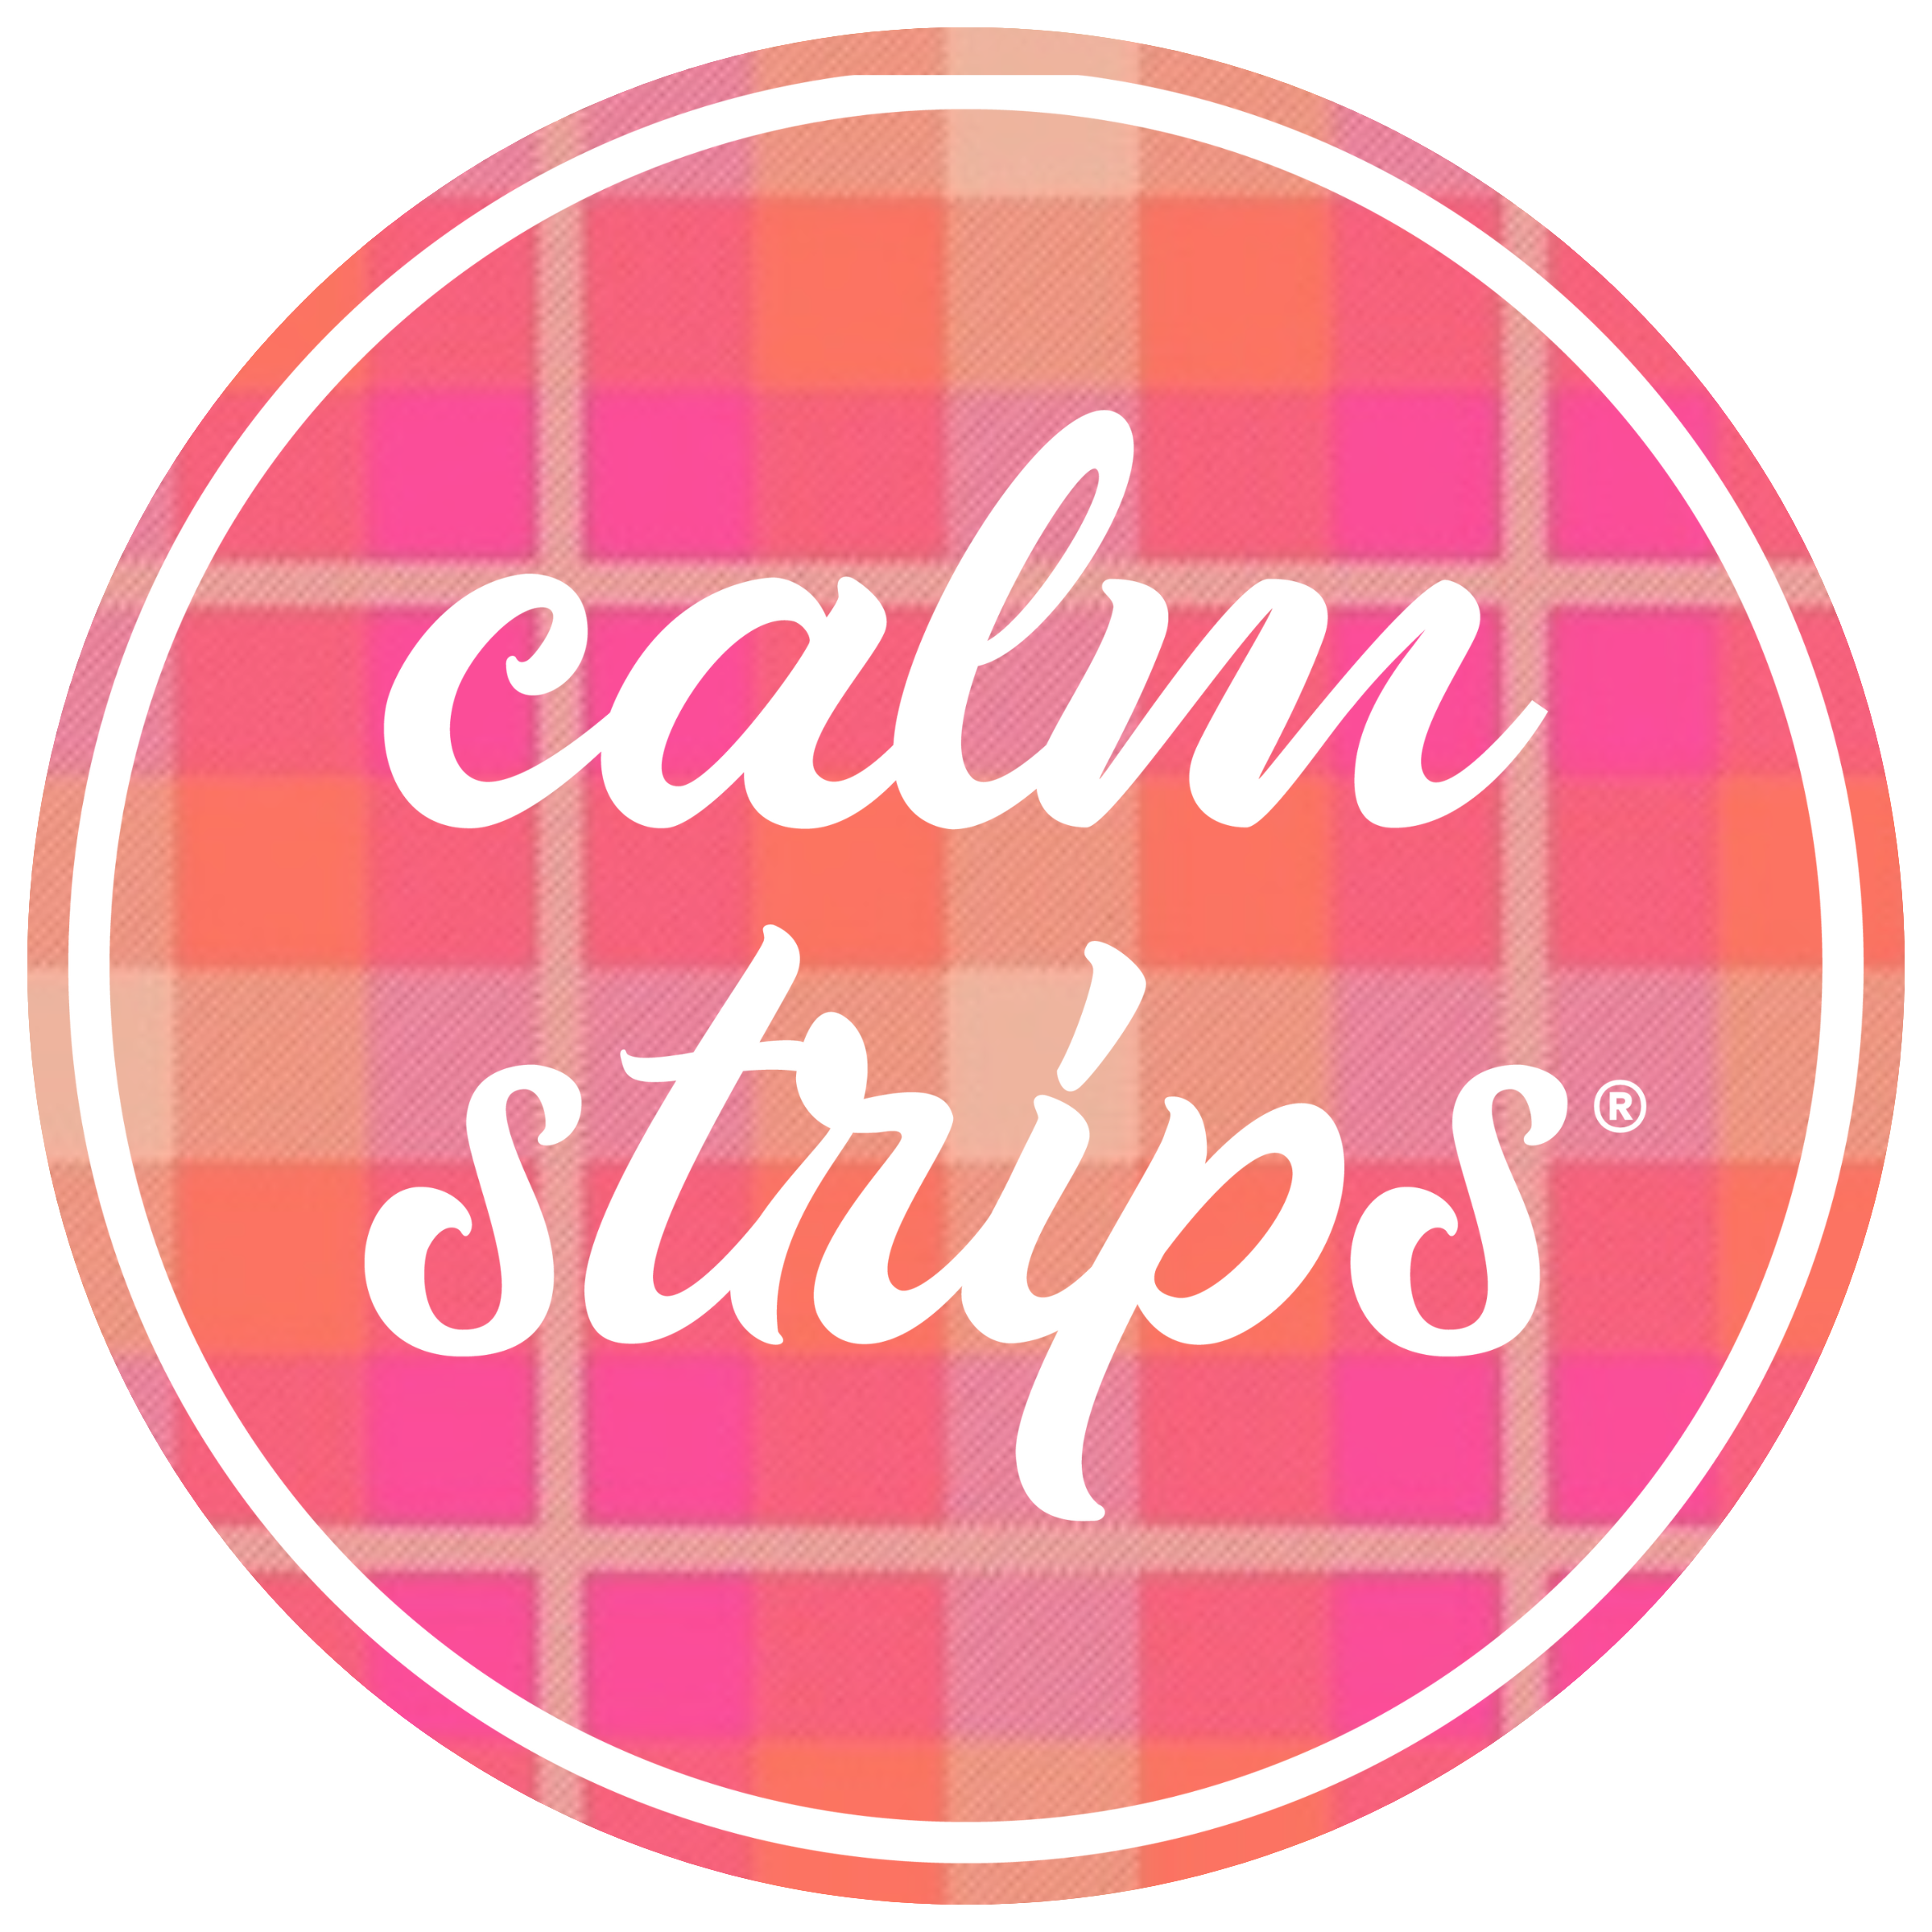 Calm Strips